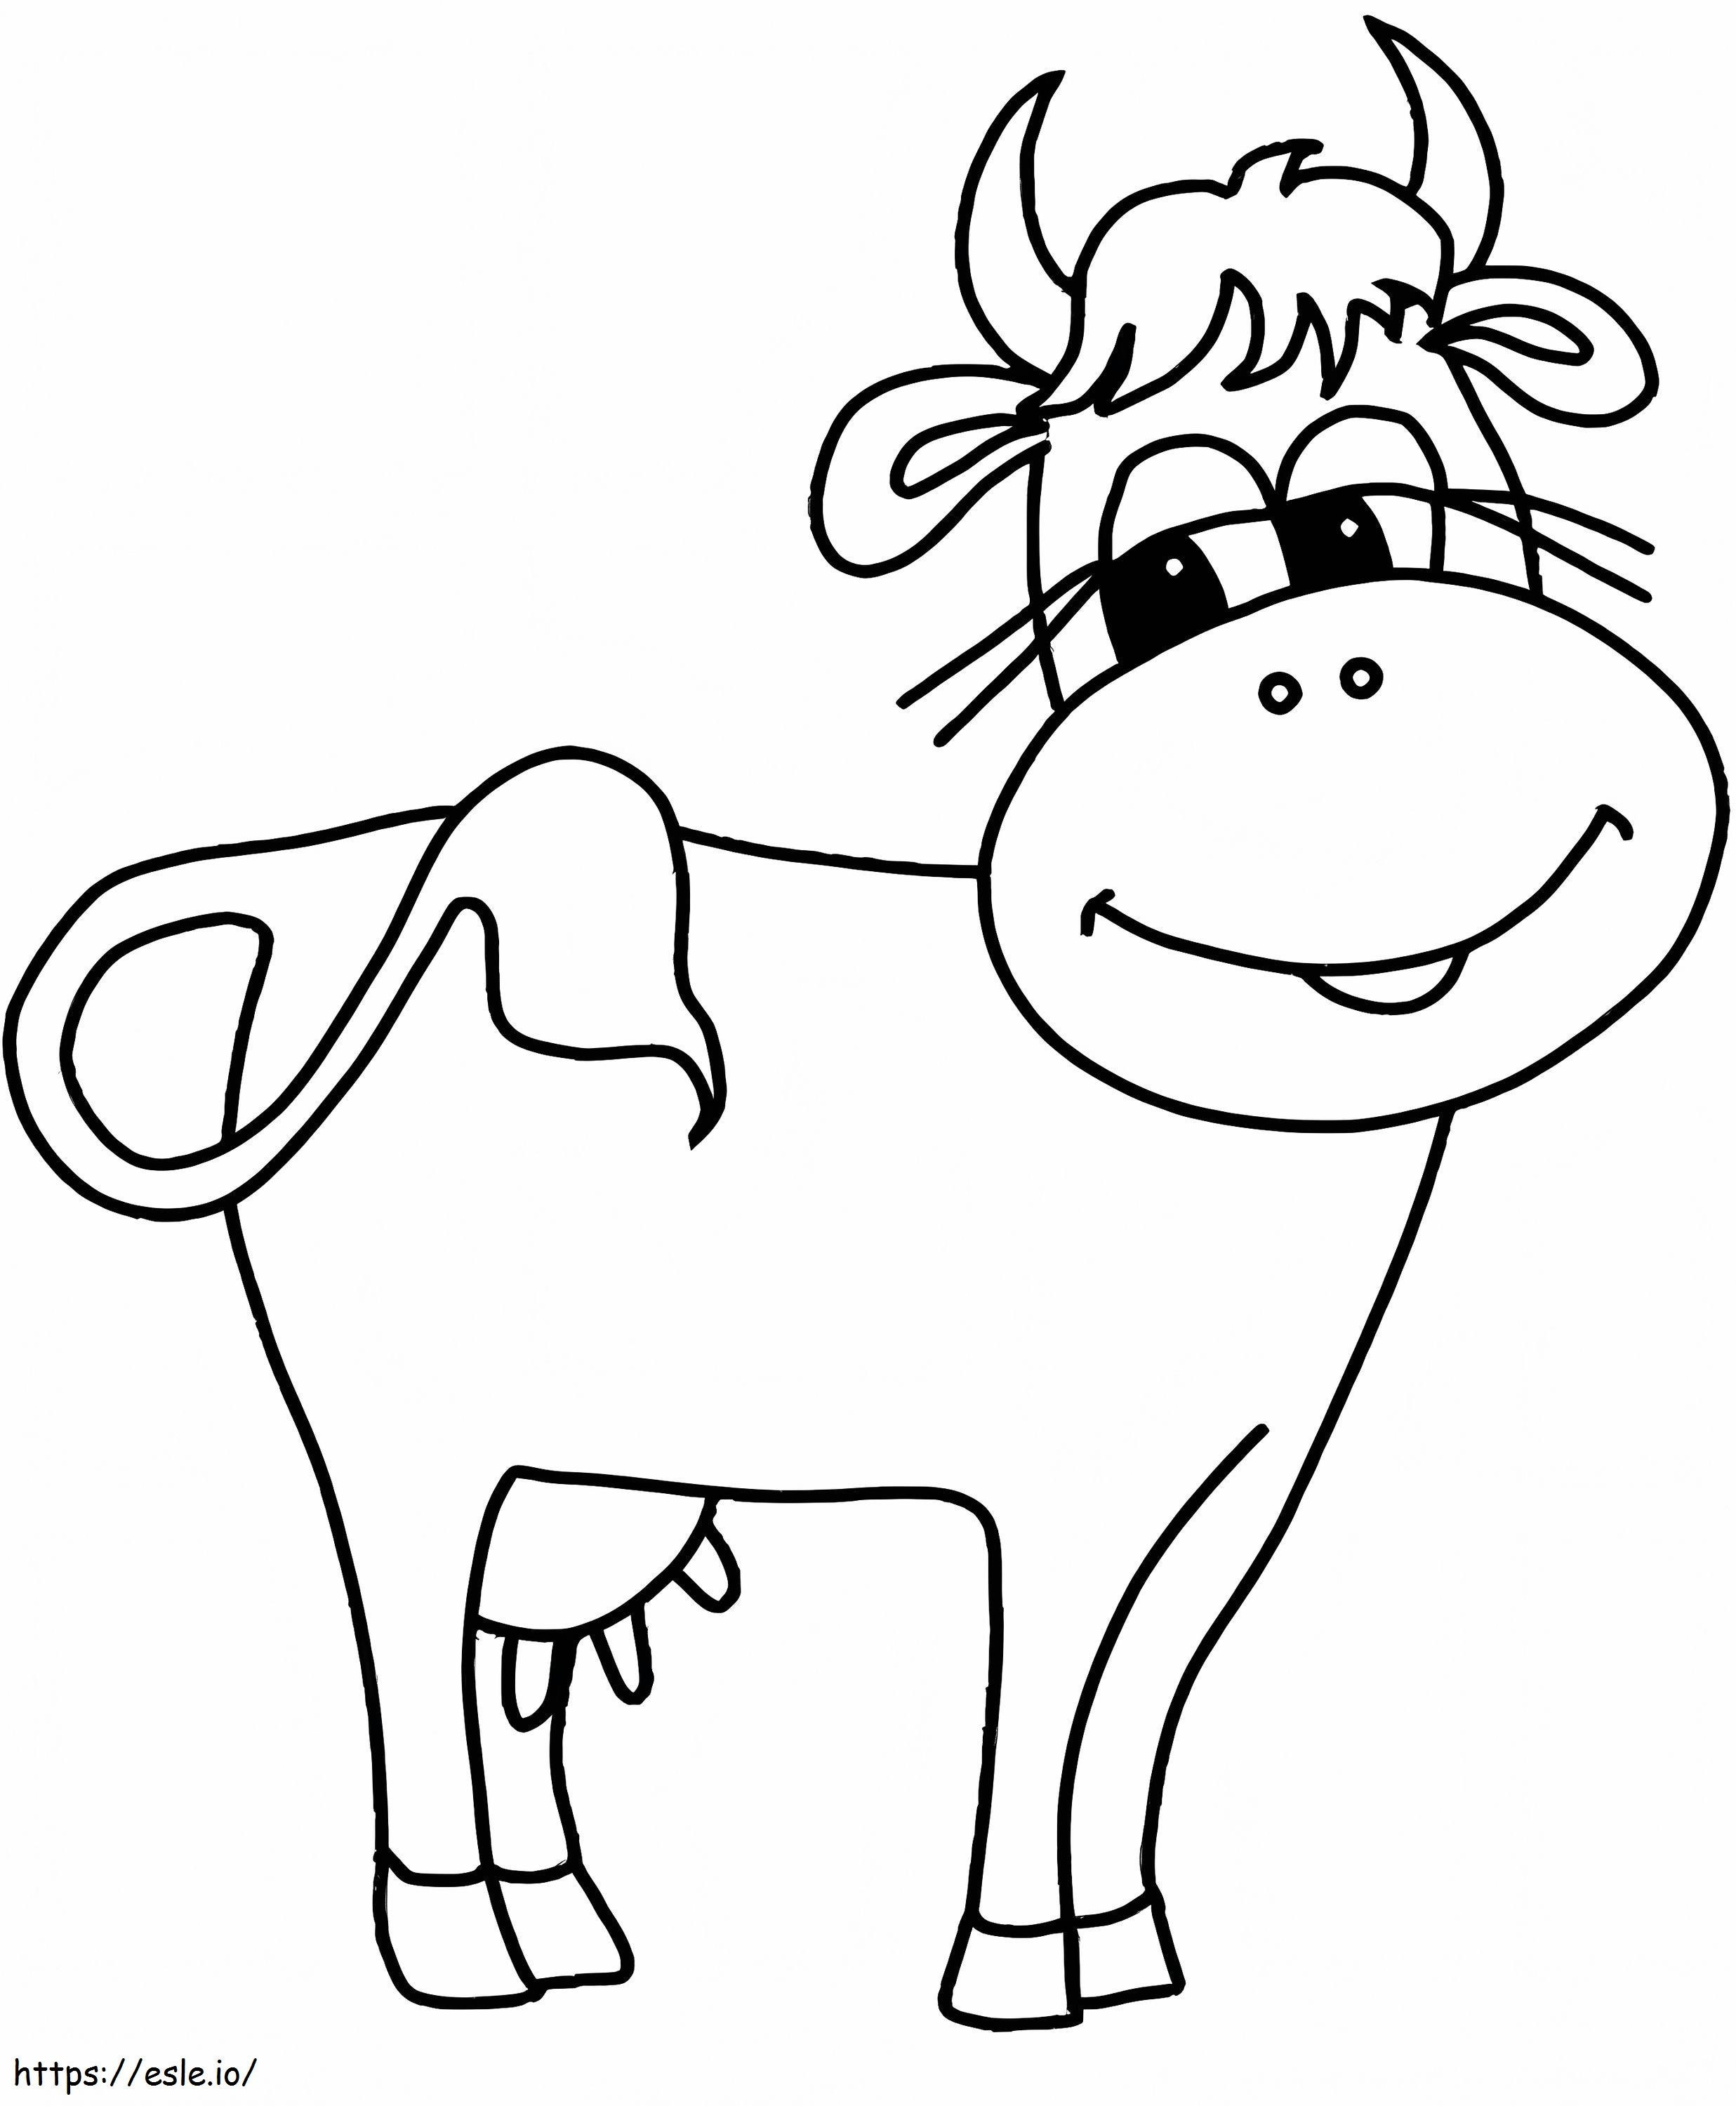 la vaca esta sonriendo para colorear